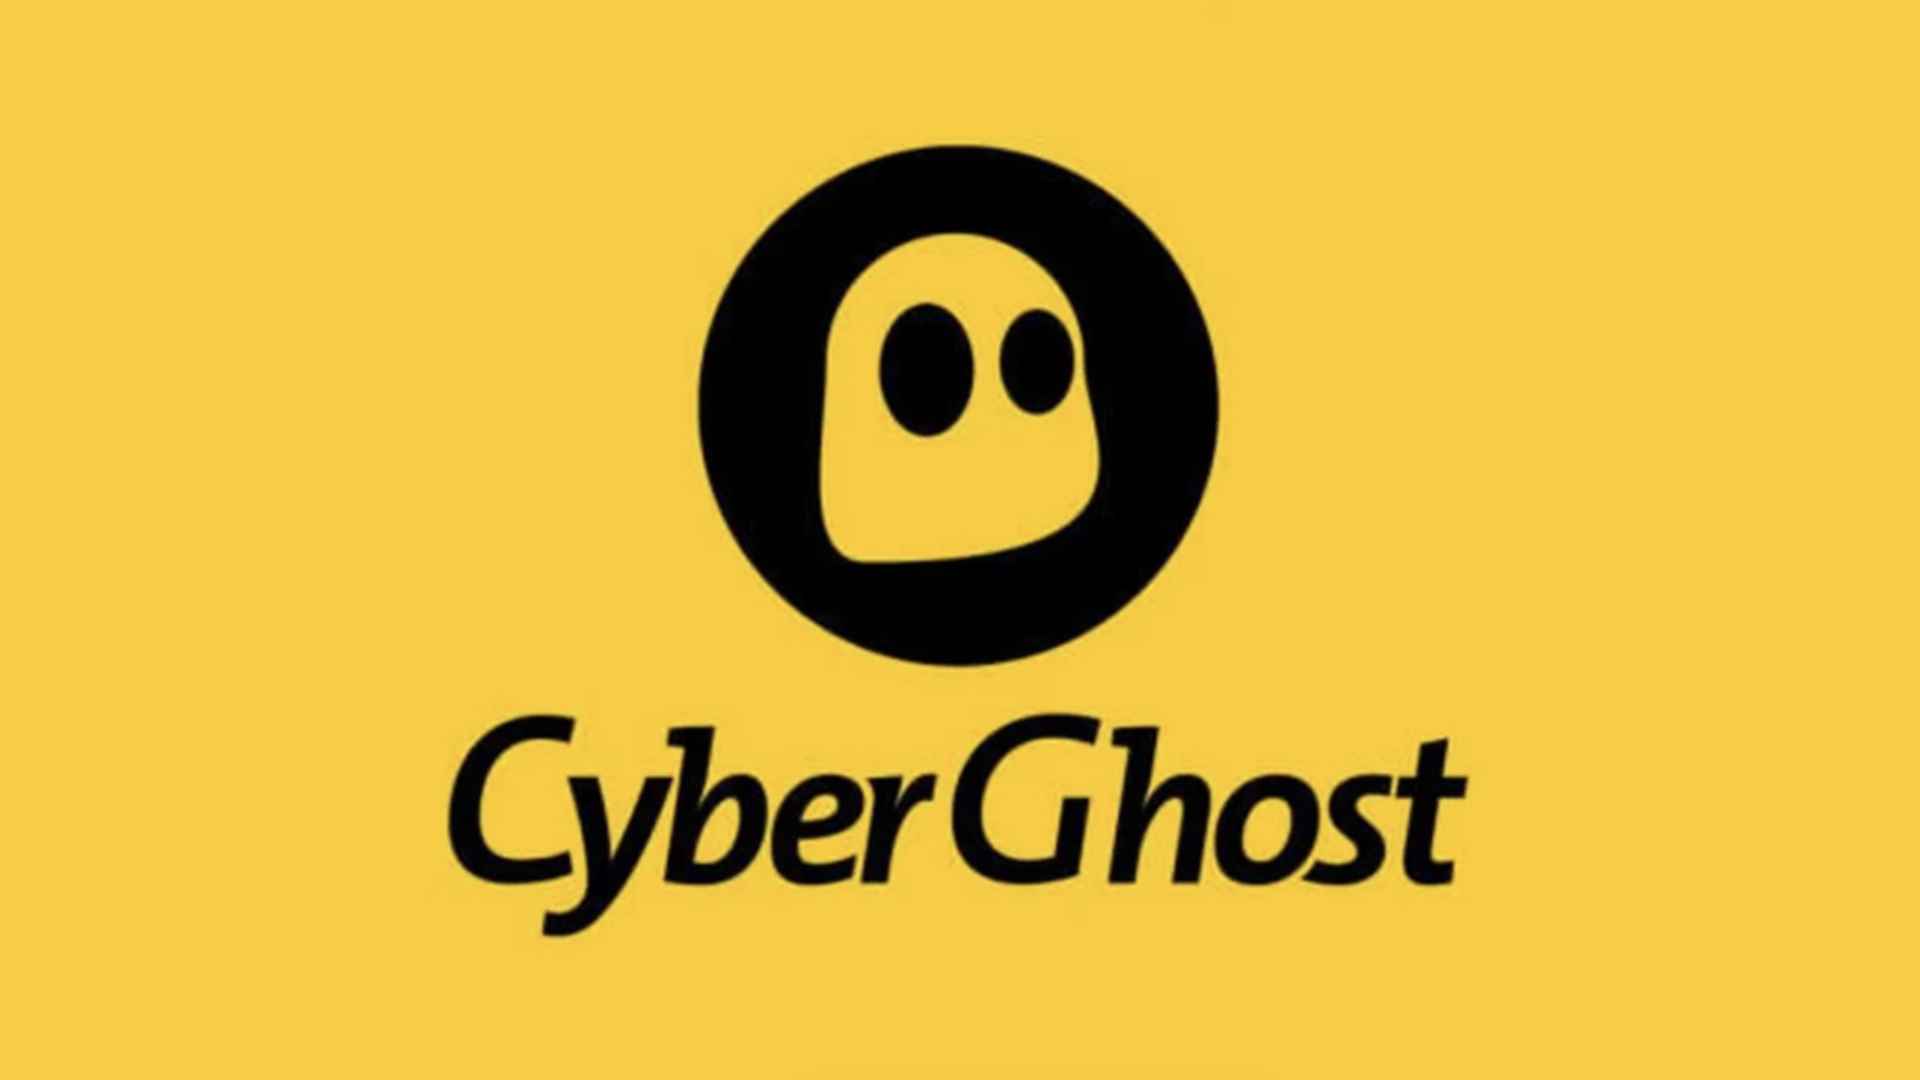 En İyi Kanada VPN'i - CyberGhost.  Resim şirket logosunu gösterir.